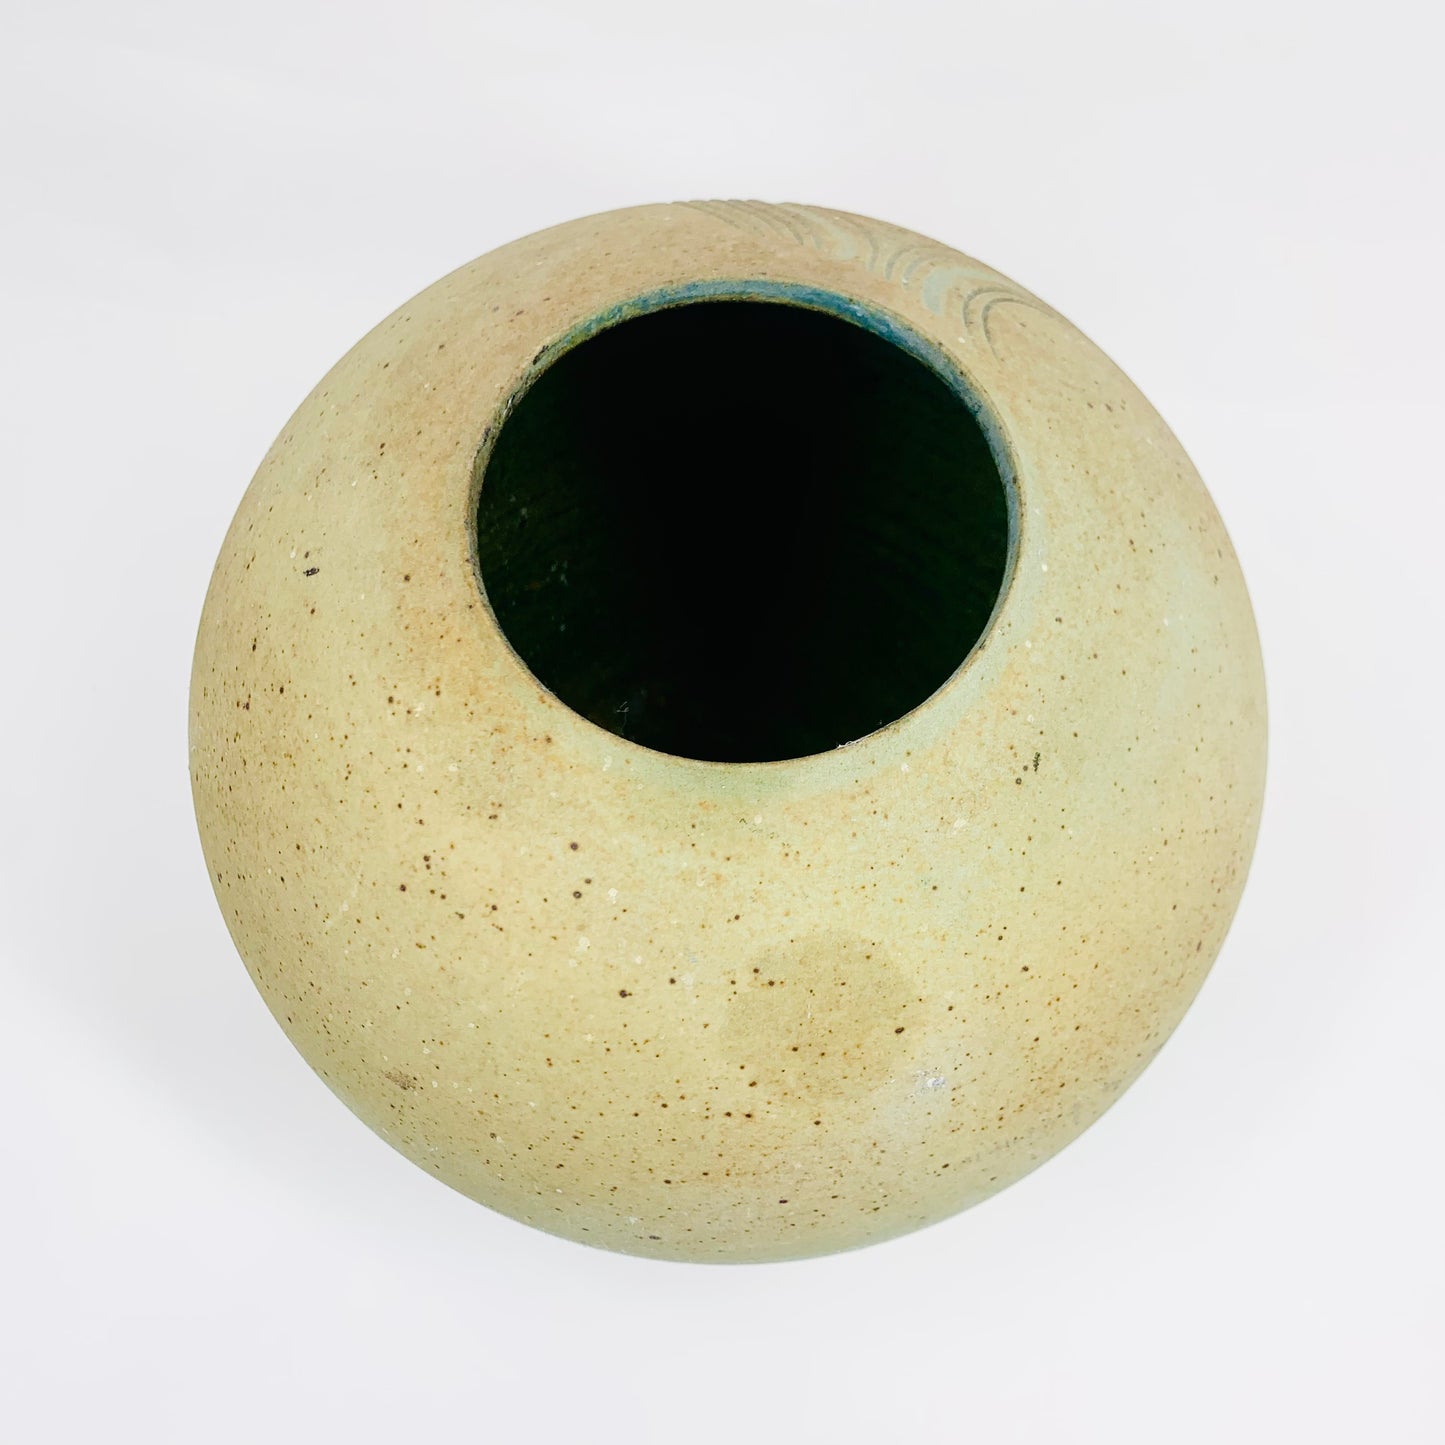 Modernist Australian pottery vase by Penny Murphy